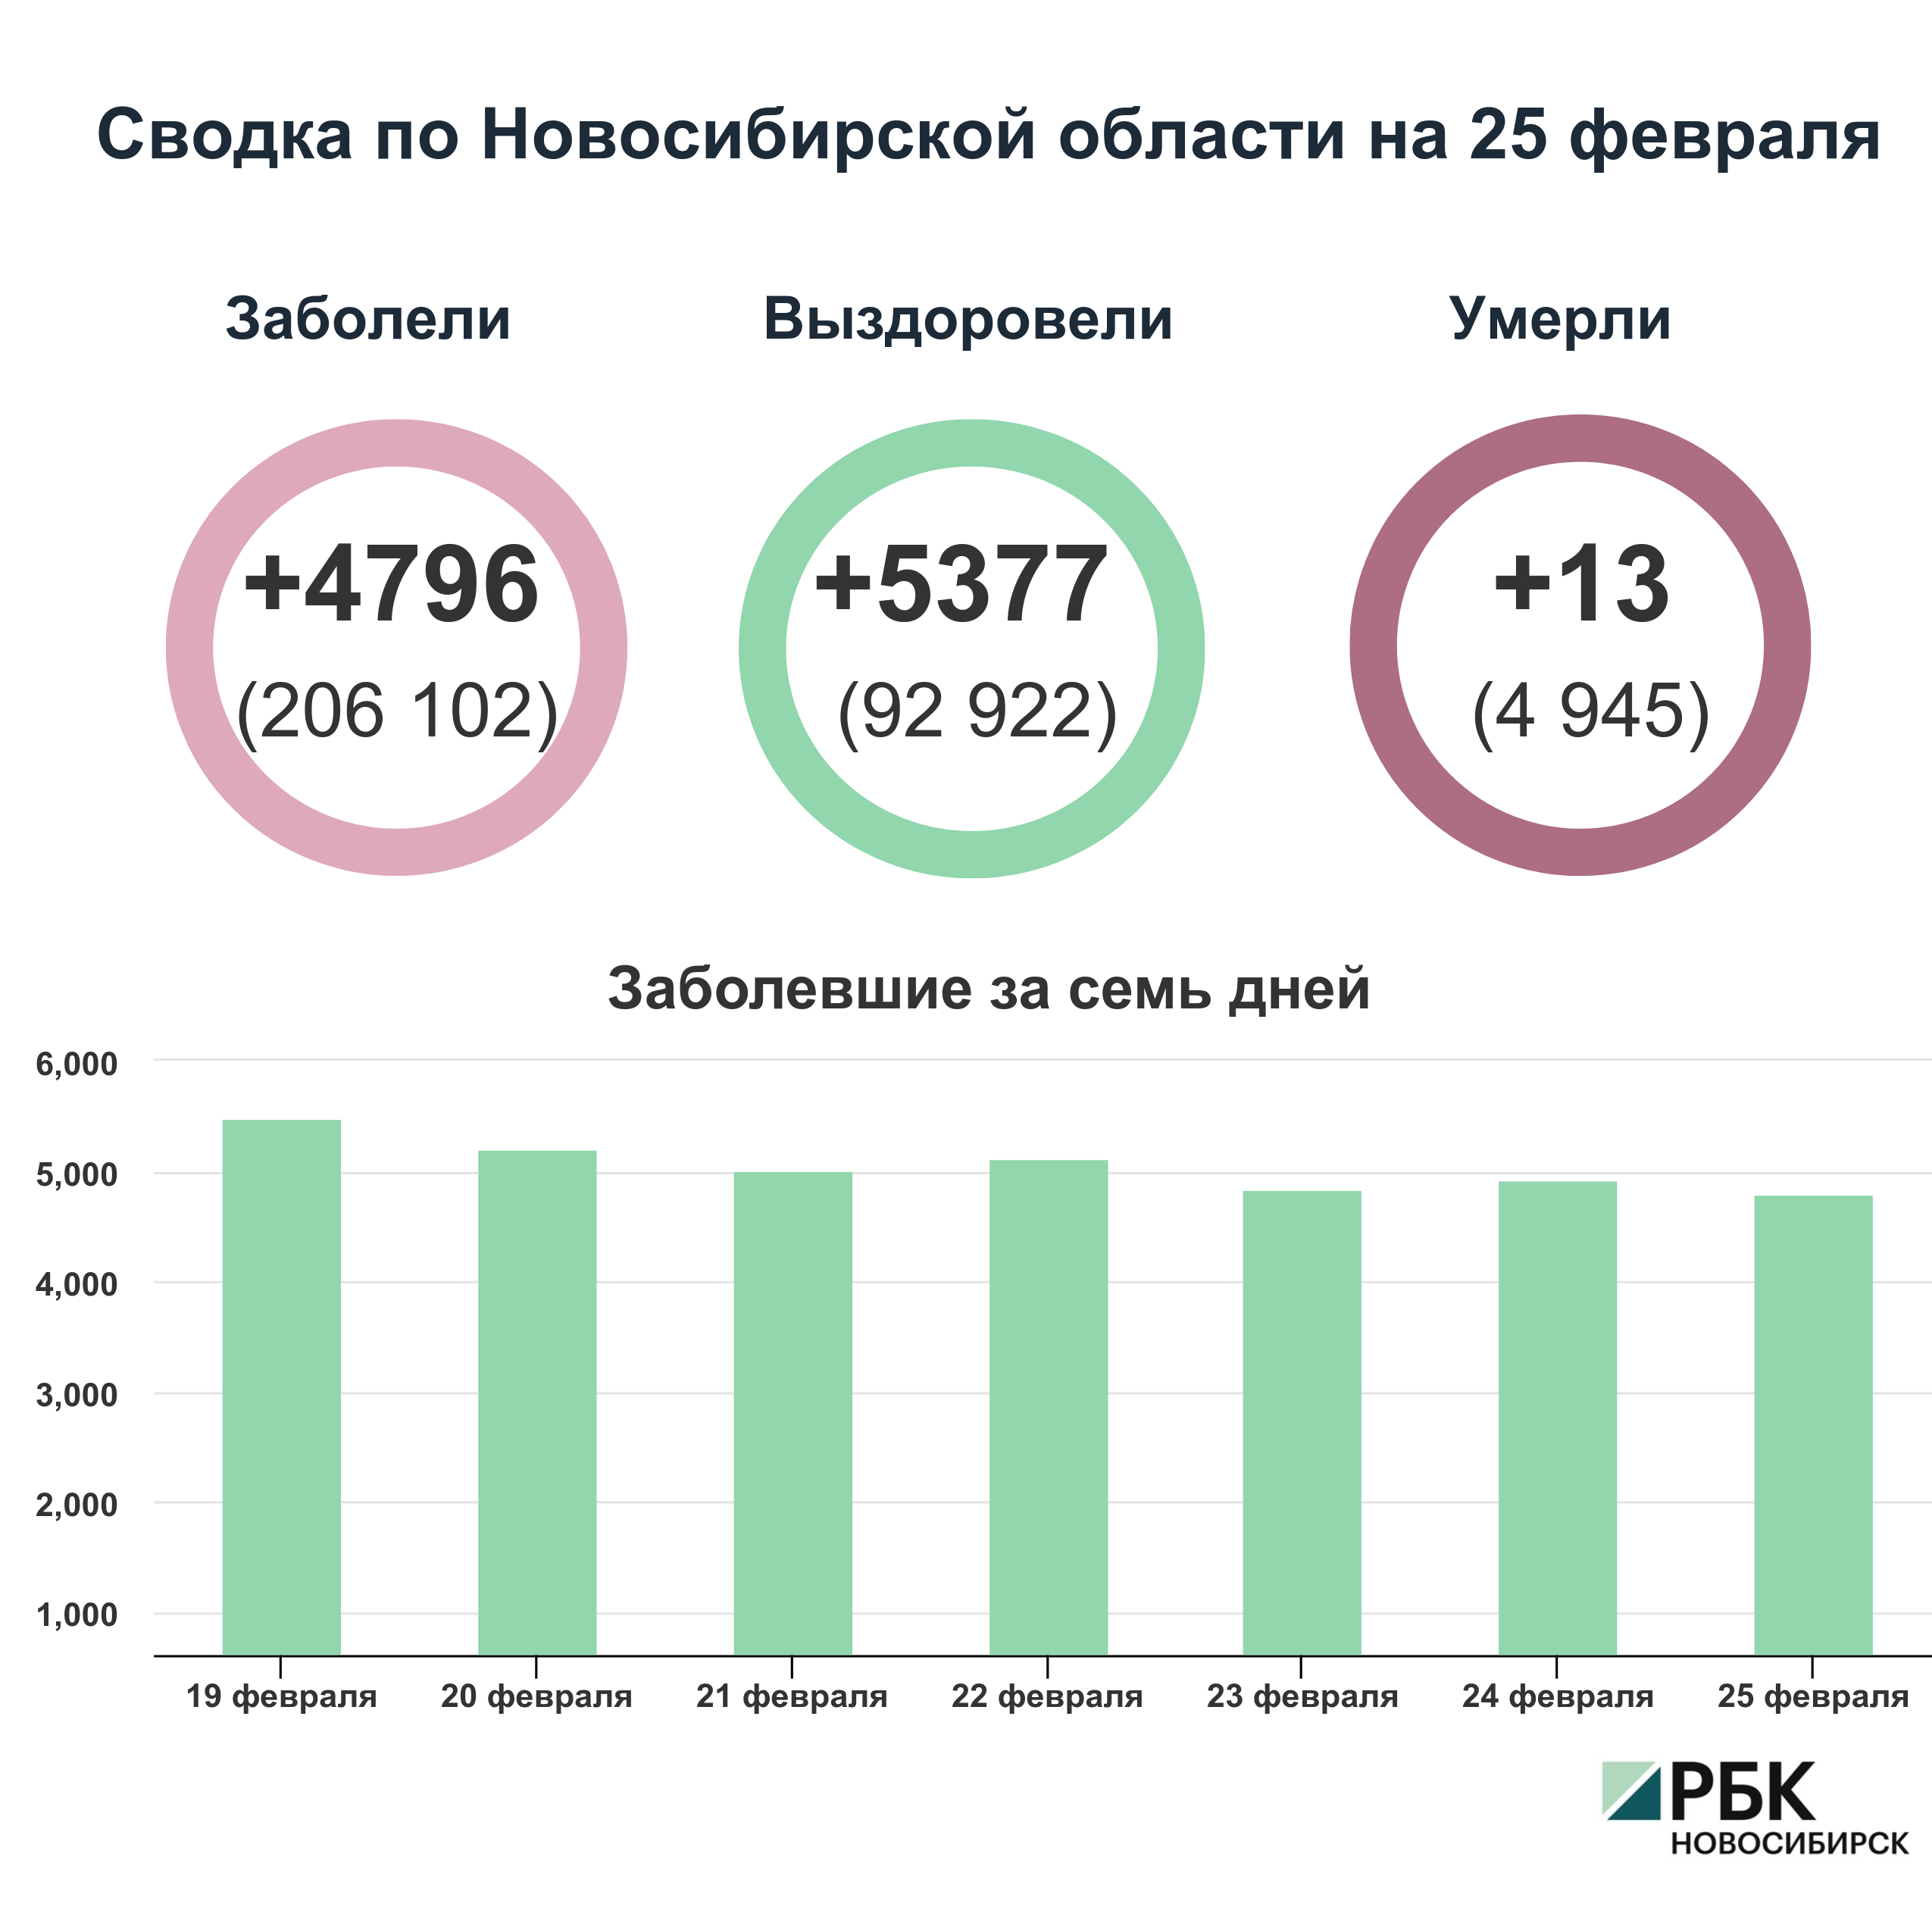 Коронавирус в Новосибирске: сводка на 25 февраля